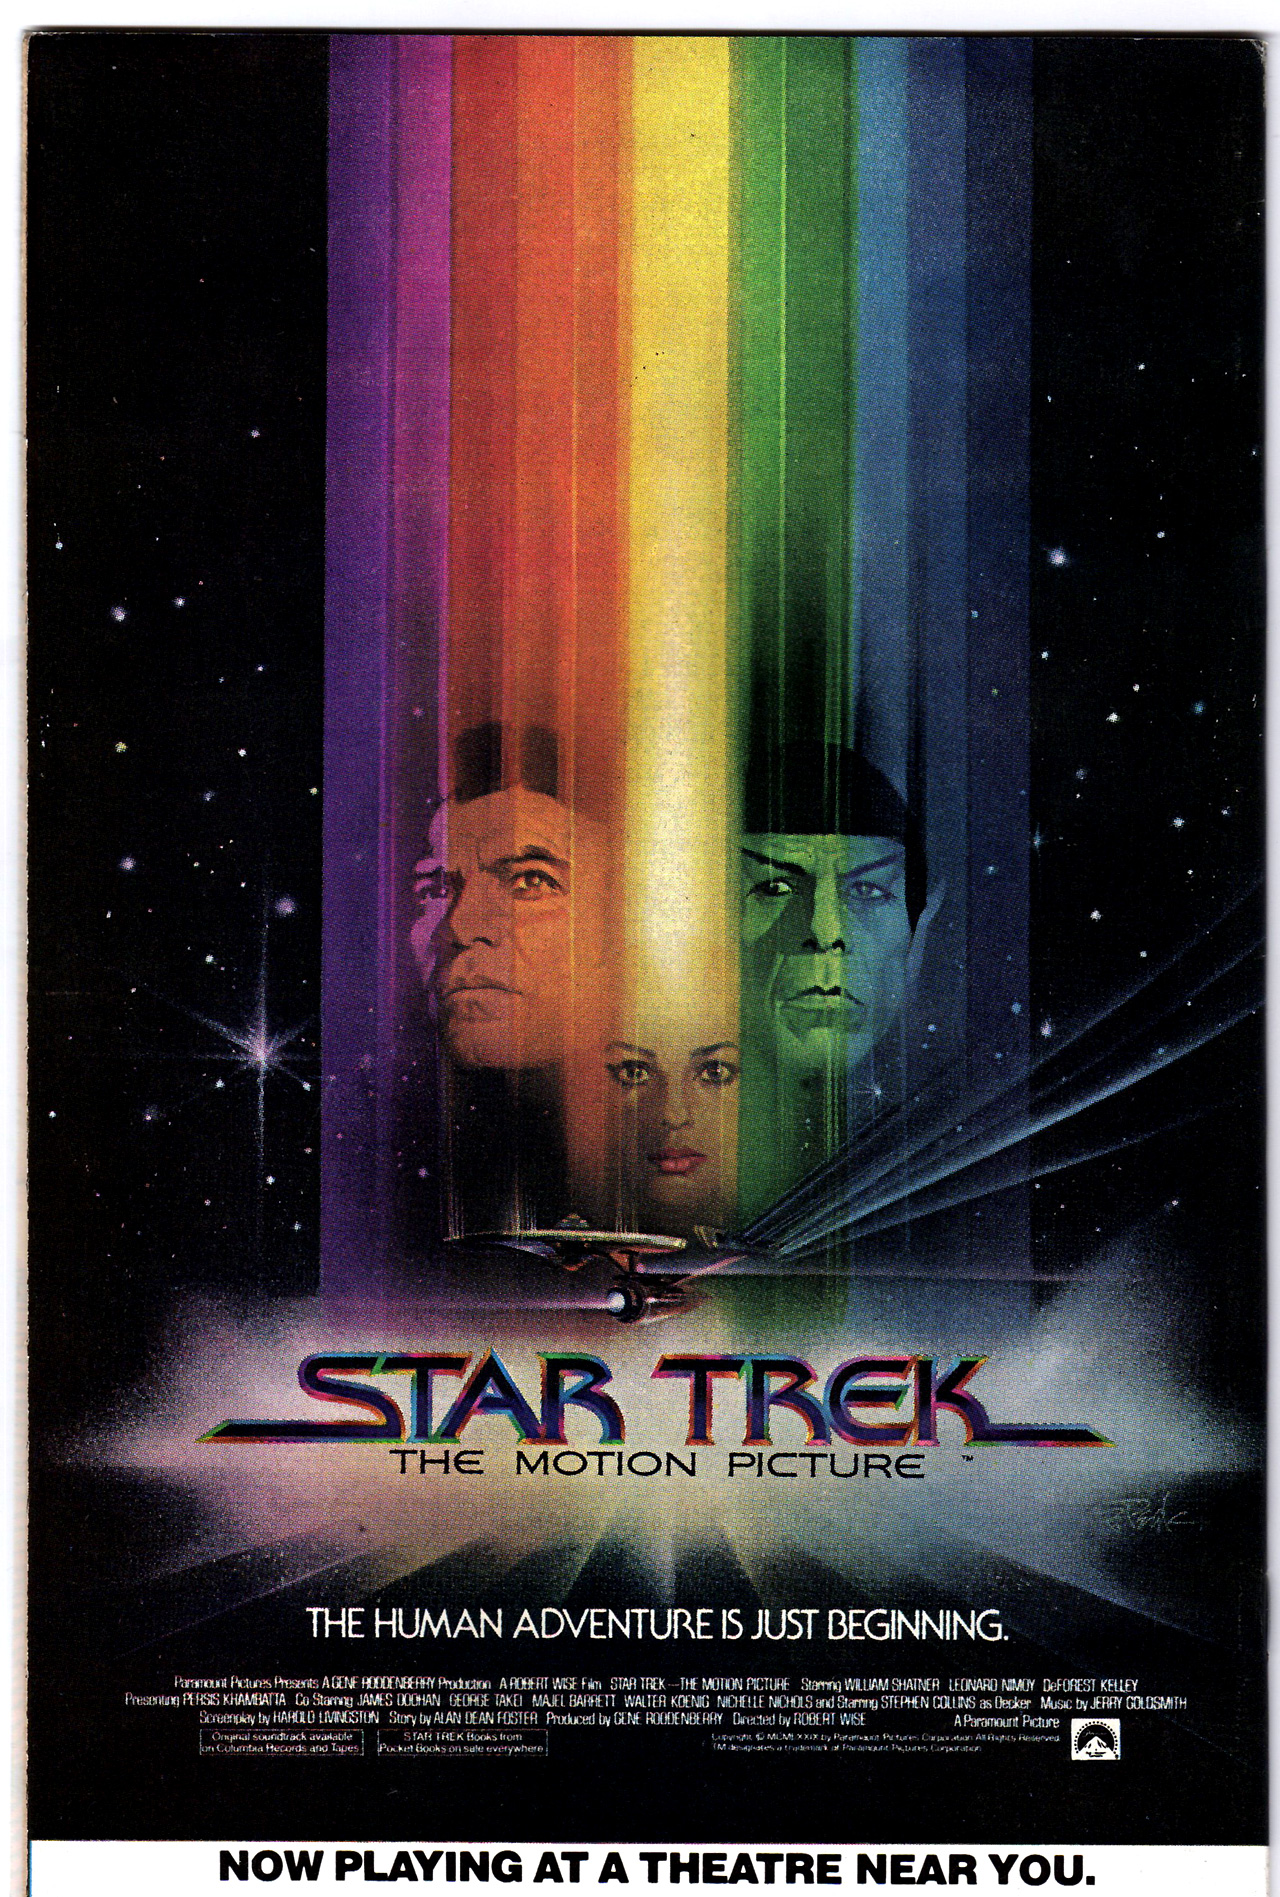 Star Trek film - Wikipedia